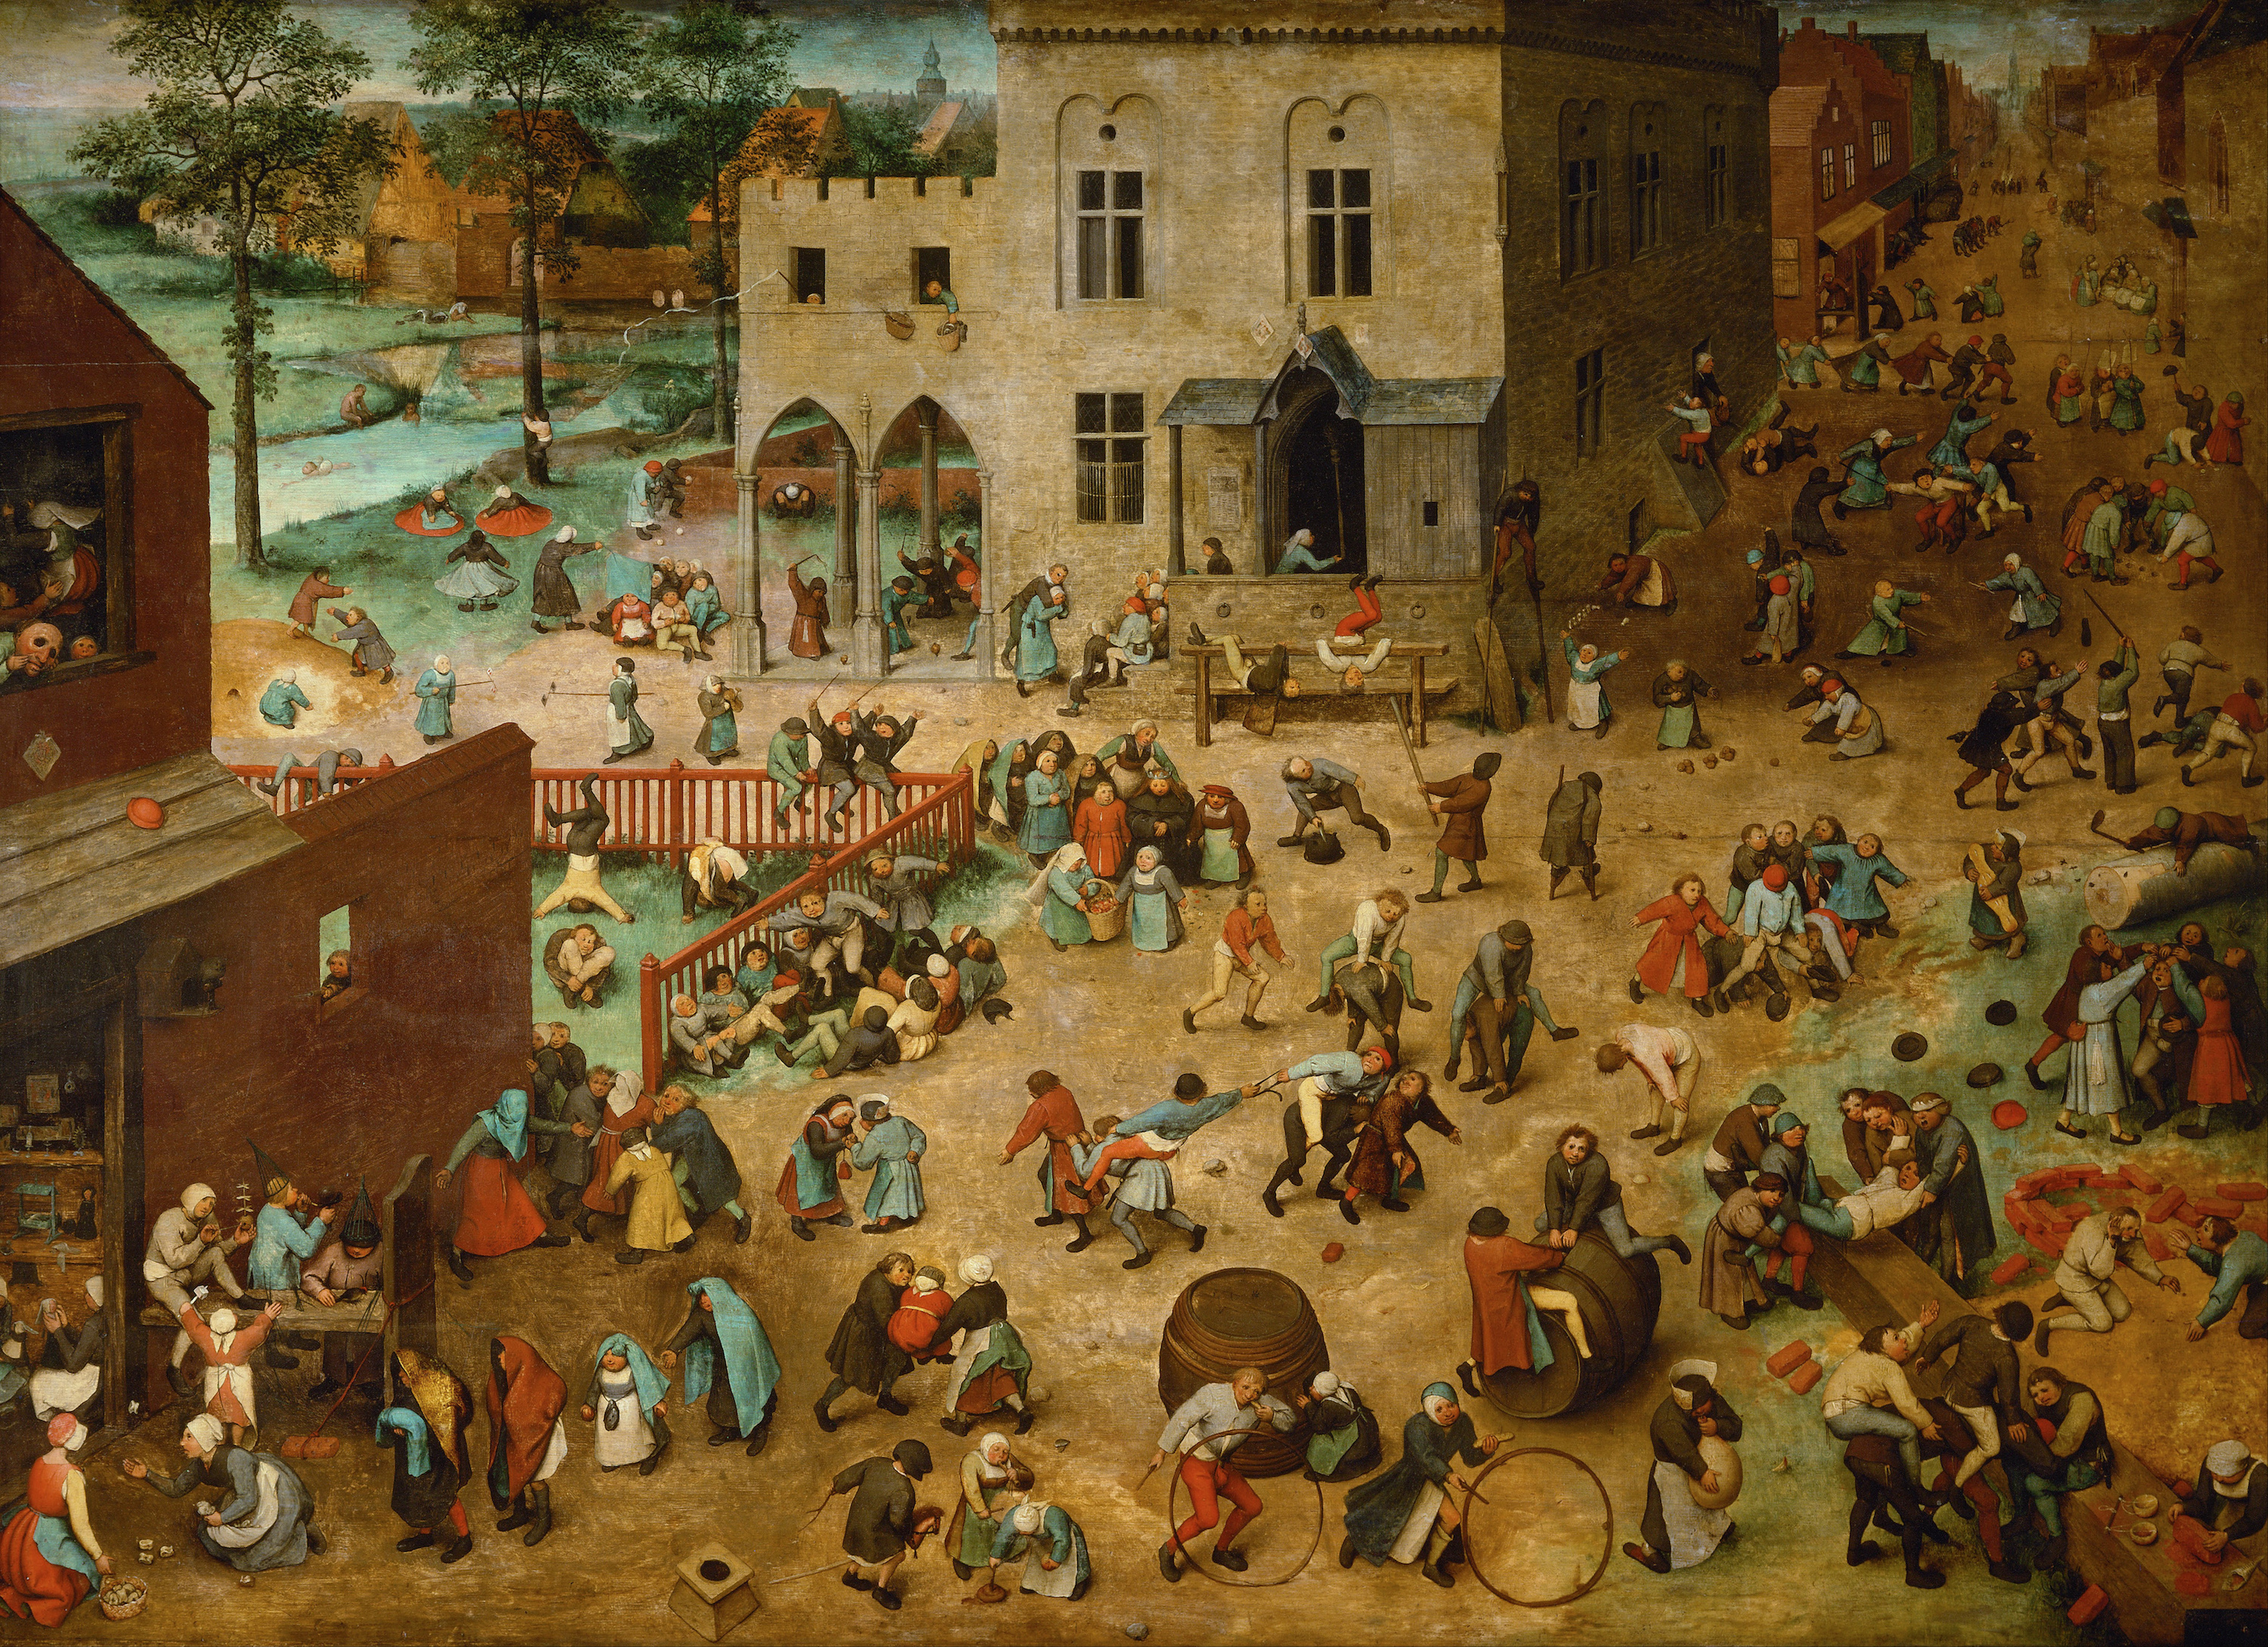 Giochi da bambini by Pieter Bruegel il Vecchio - 1560 - 118 x 161 cm Kunsthistorisches Museum